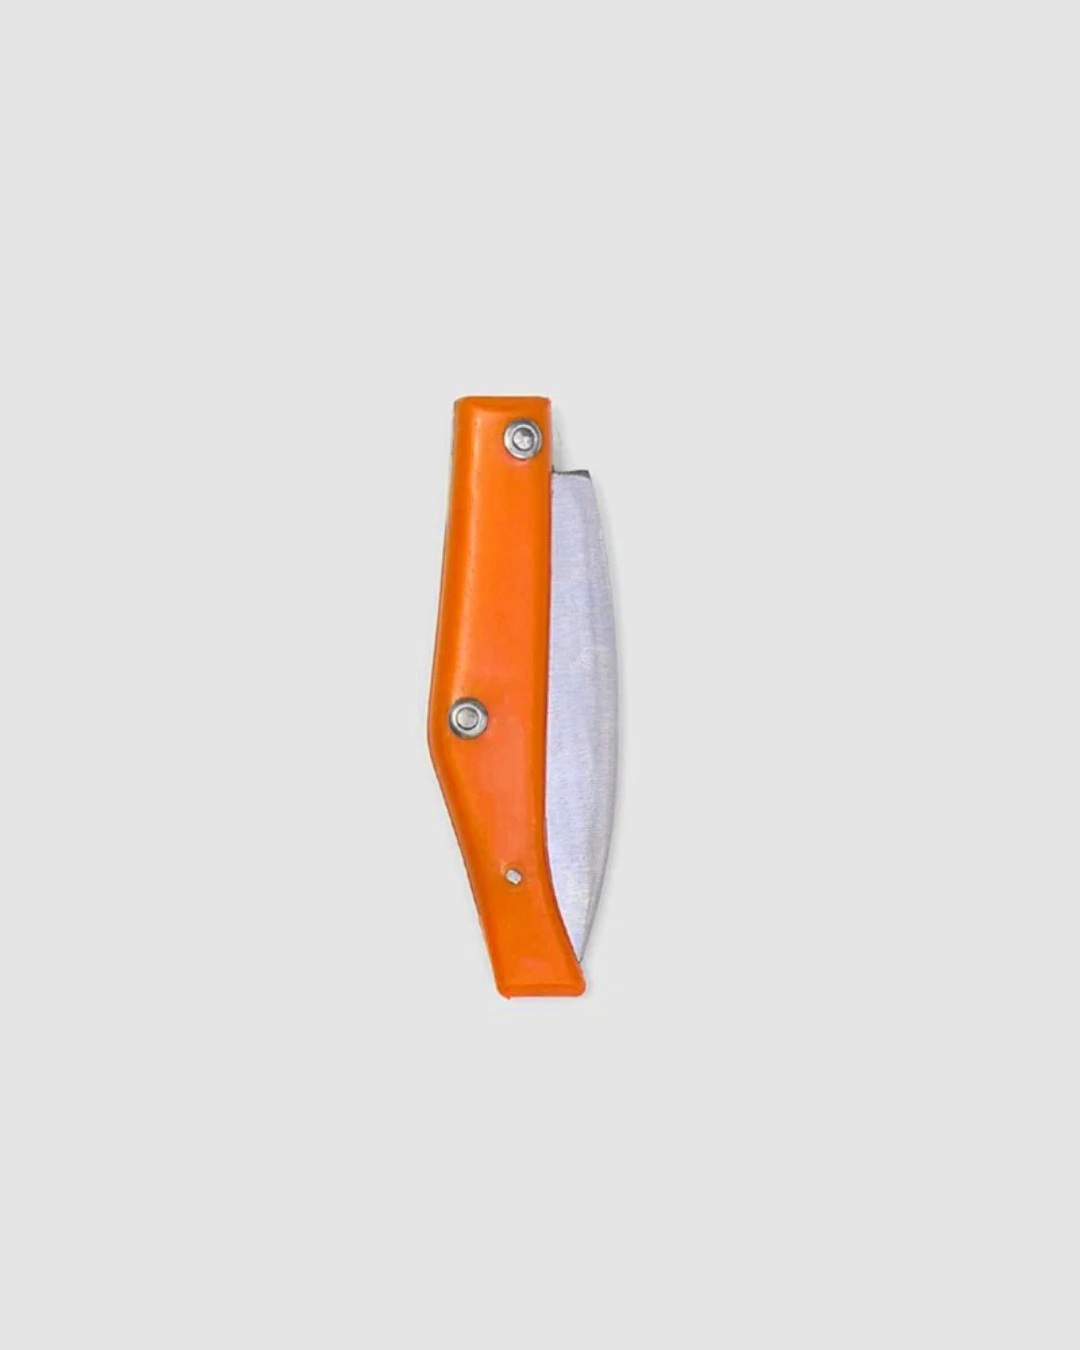 Pocket knife orange 7cm blade